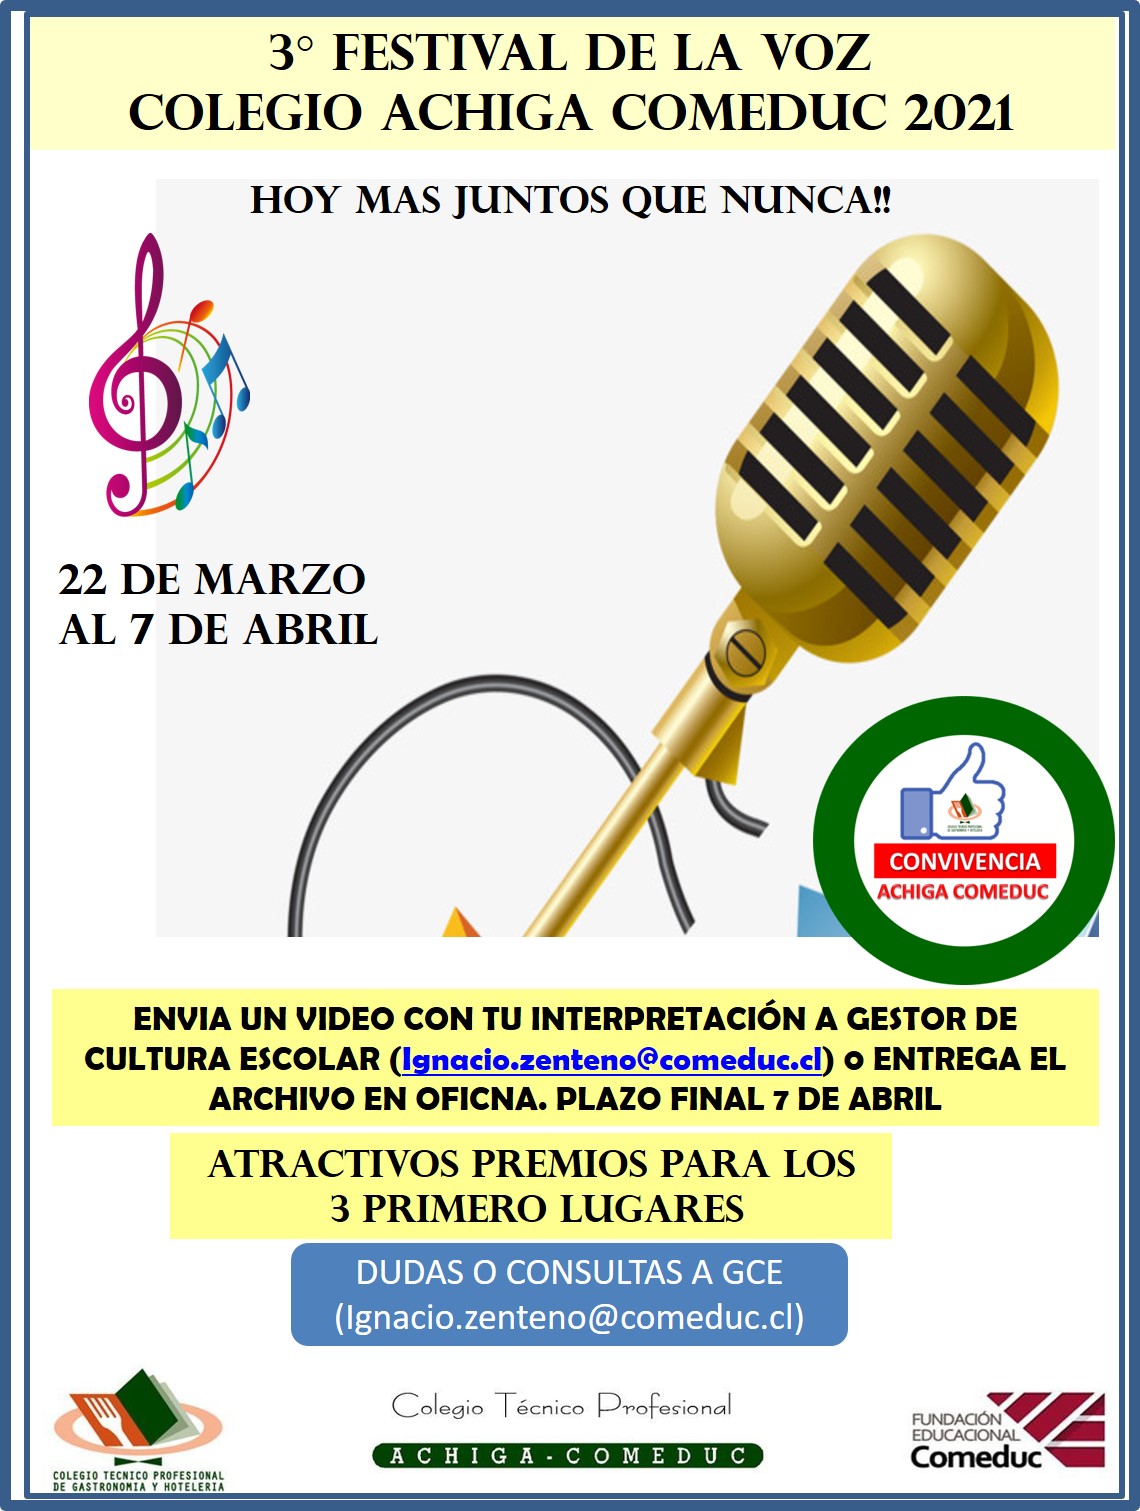 Festival de la Voz Achiga Comeduc 2021